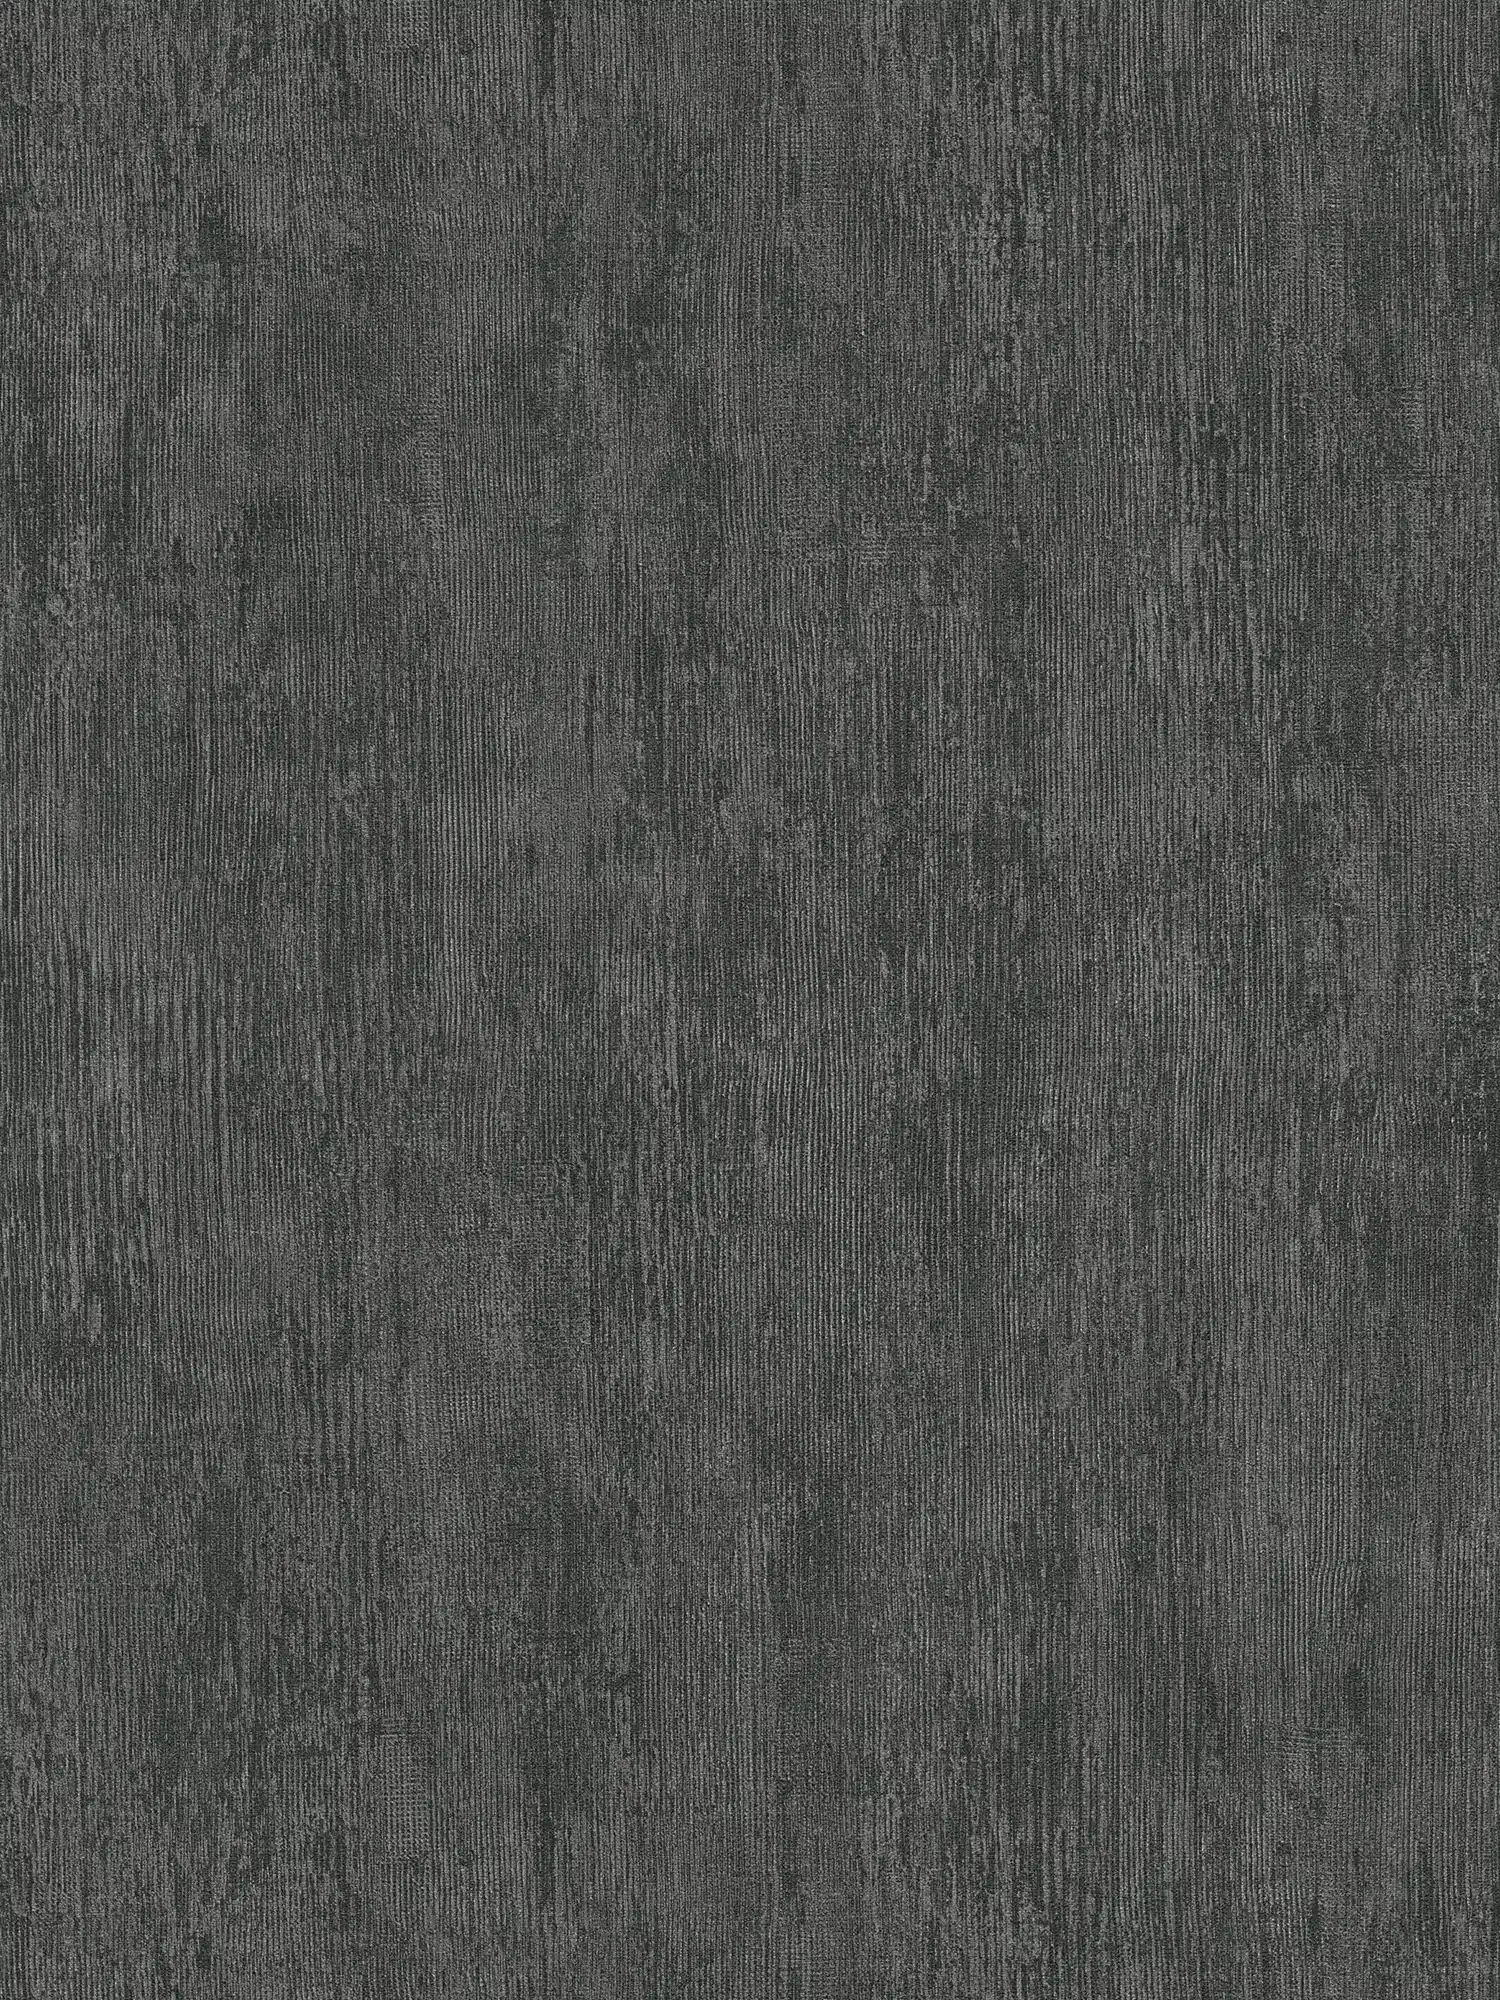 Metal wallpaper with rustic design - grey, black
